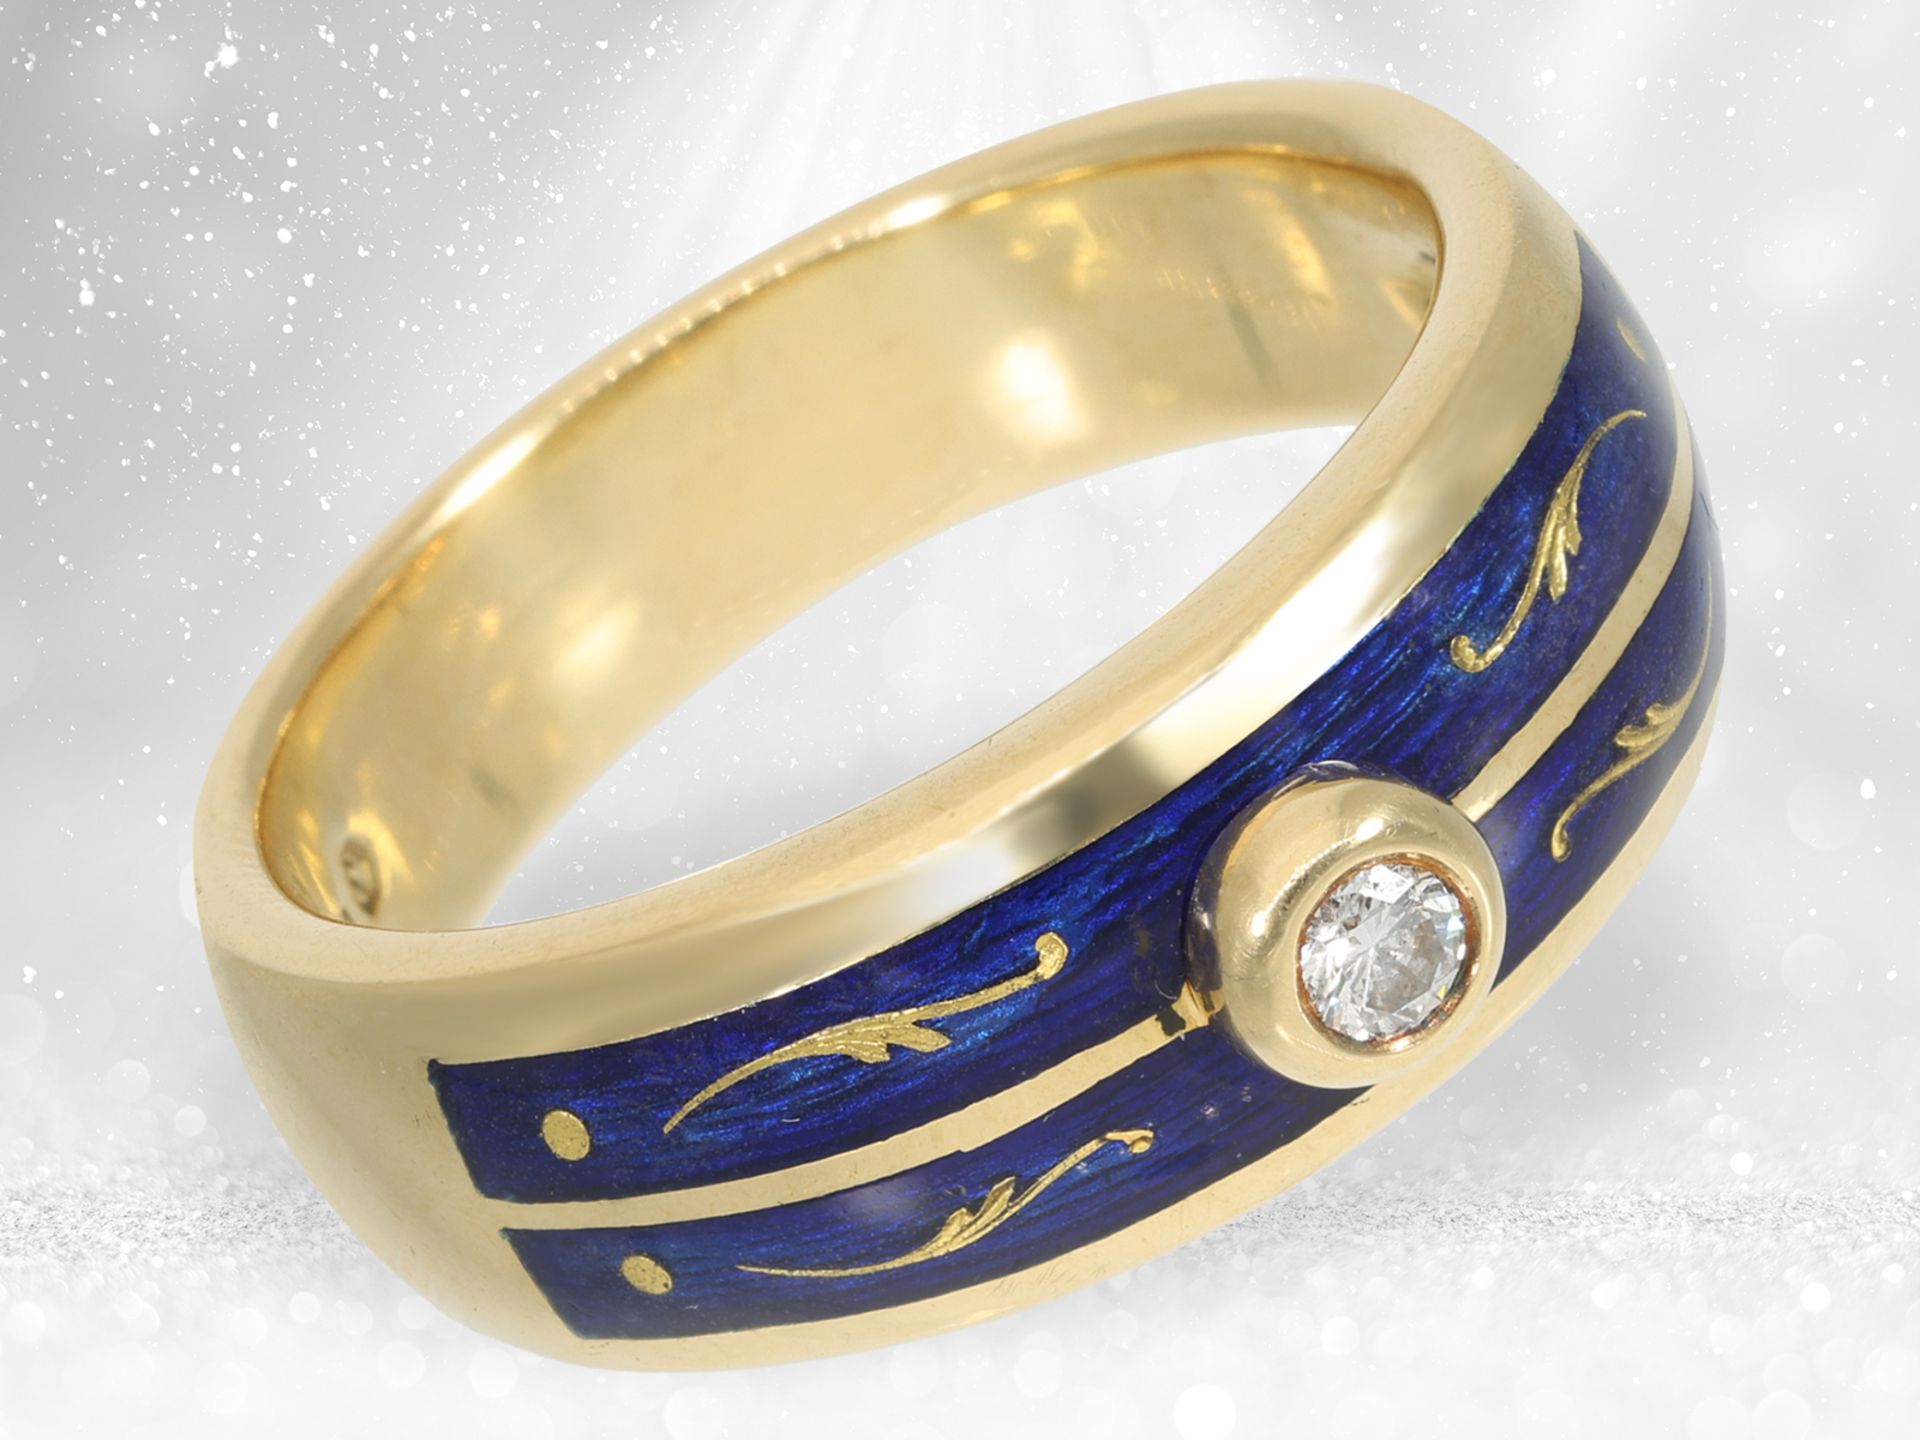 Hochwertiger und seltener limitierter Gold/Emaille-Ring mit Brillant, Fabergé by Victor Mayer, inter